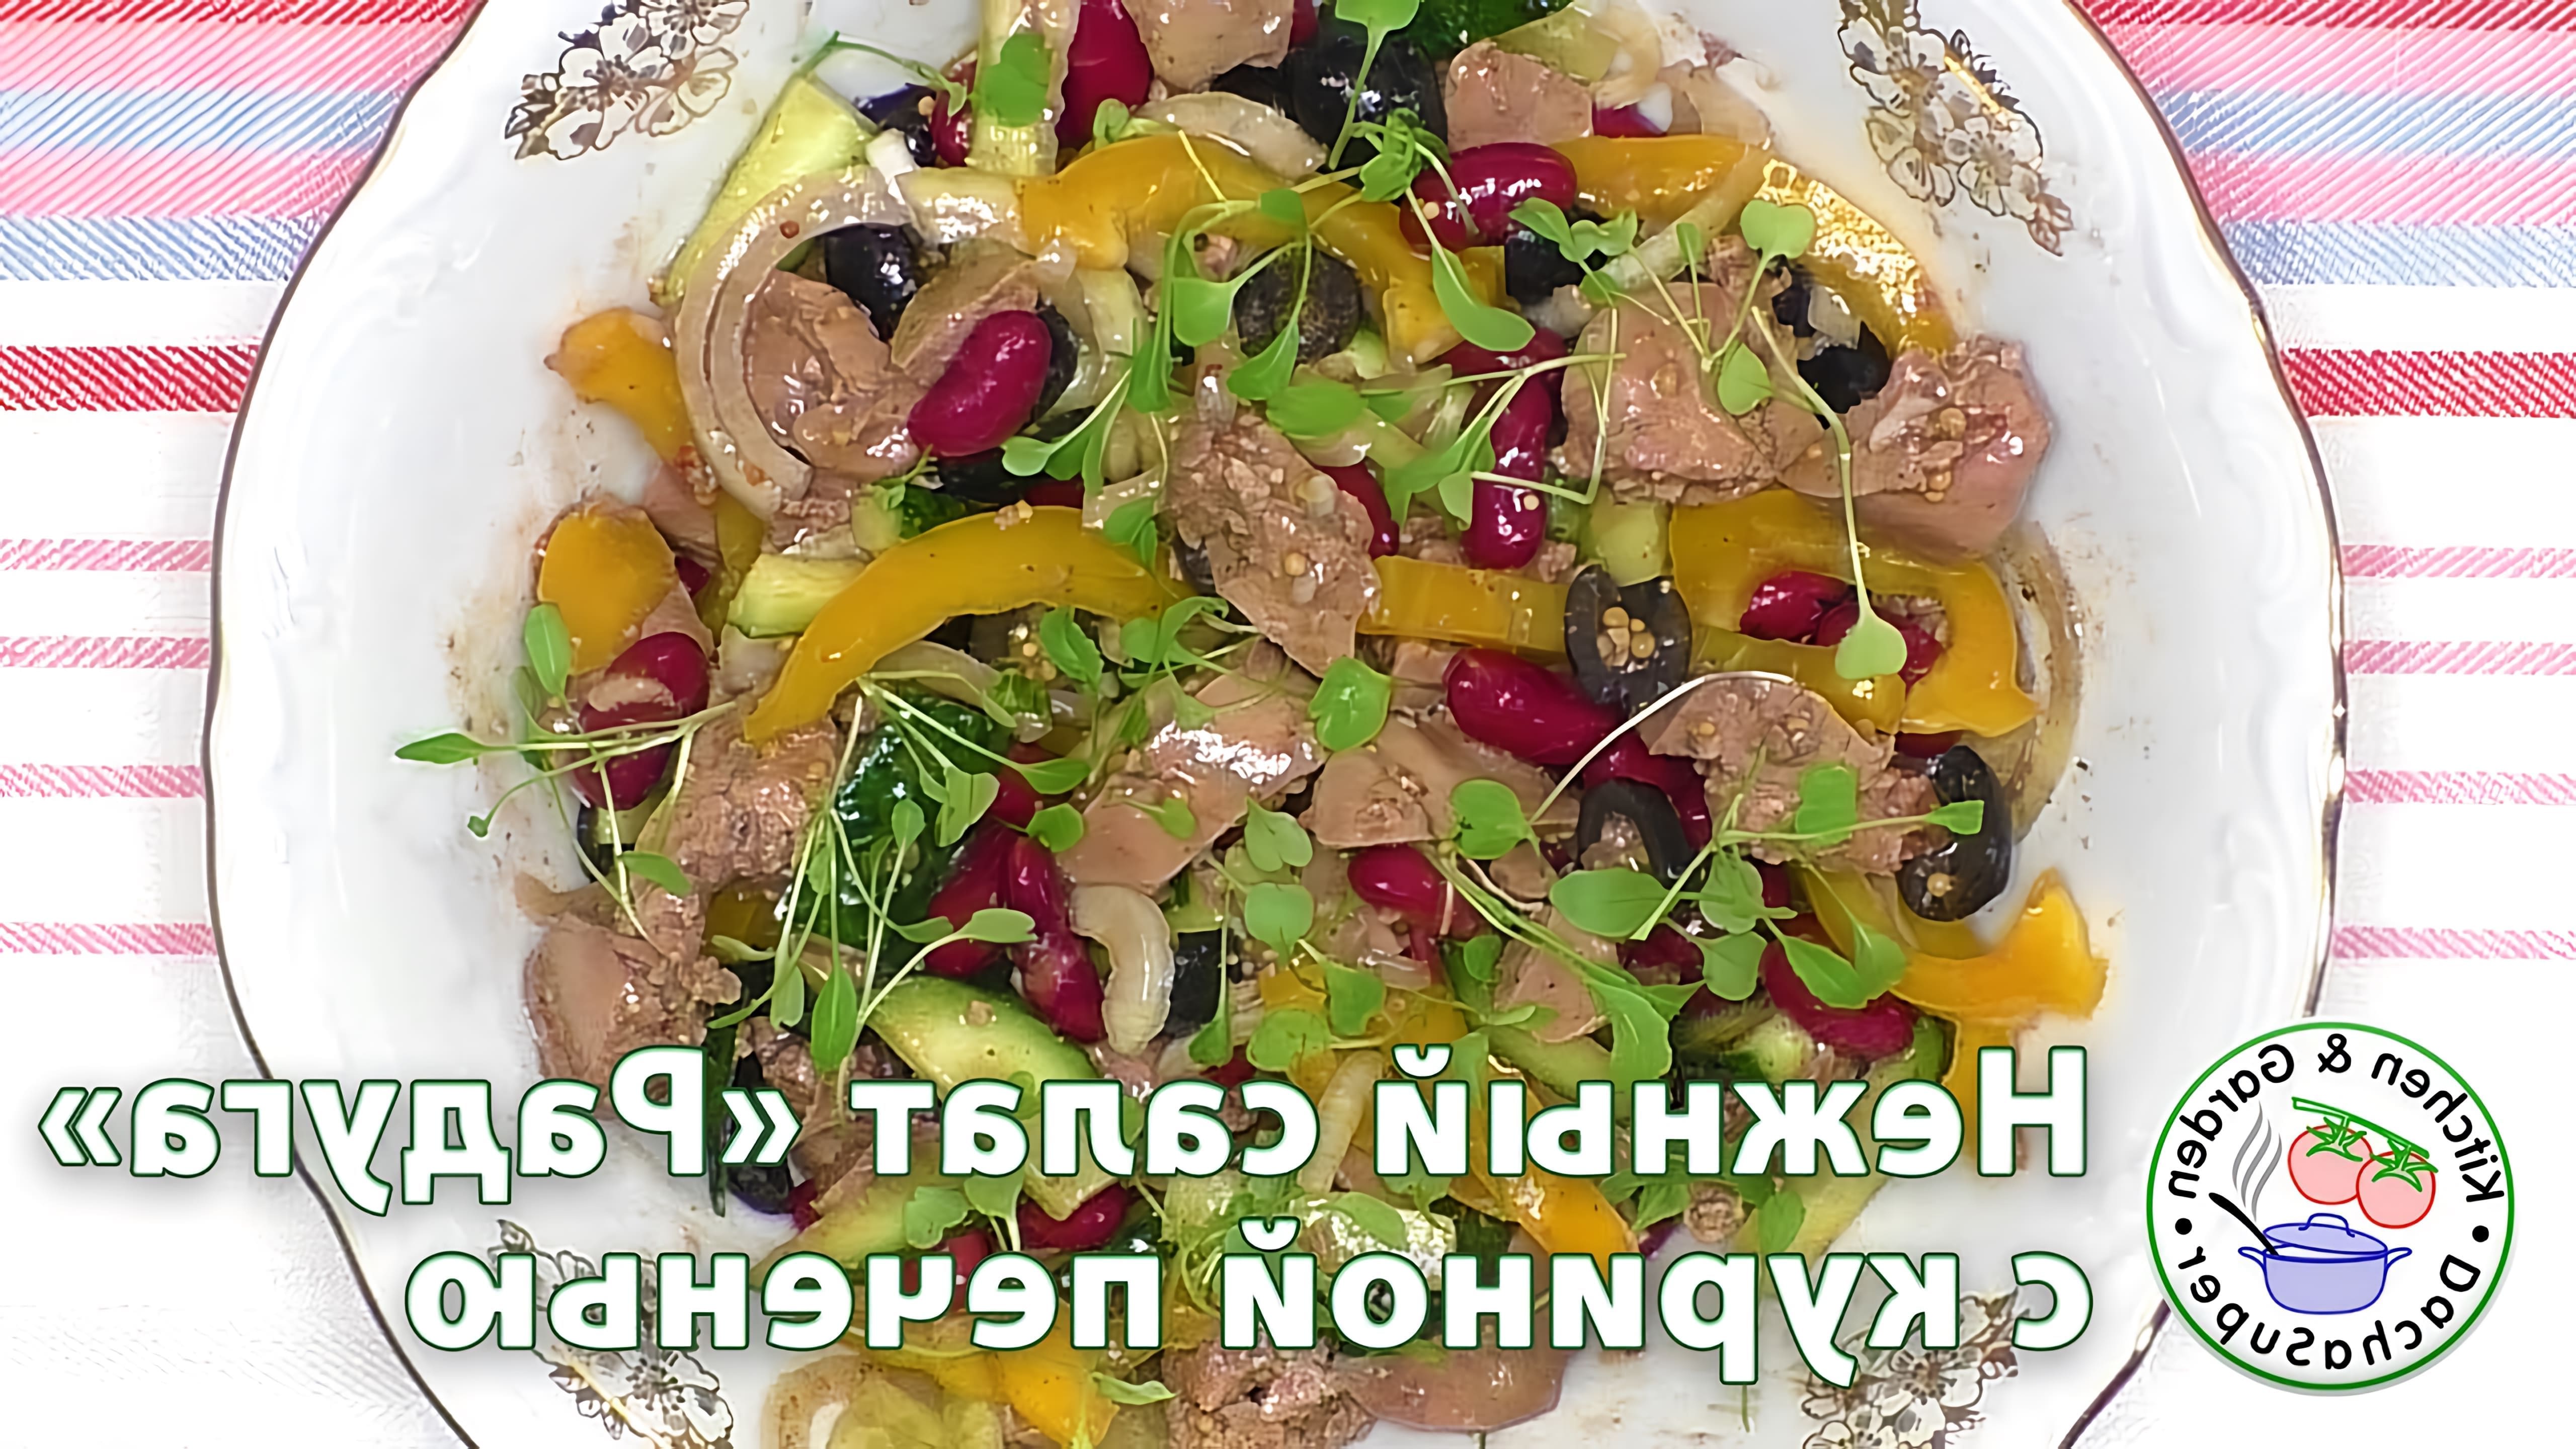 В данном видео демонстрируется рецепт приготовления нежного салата "Радуга" с куриной печенью и фасолью